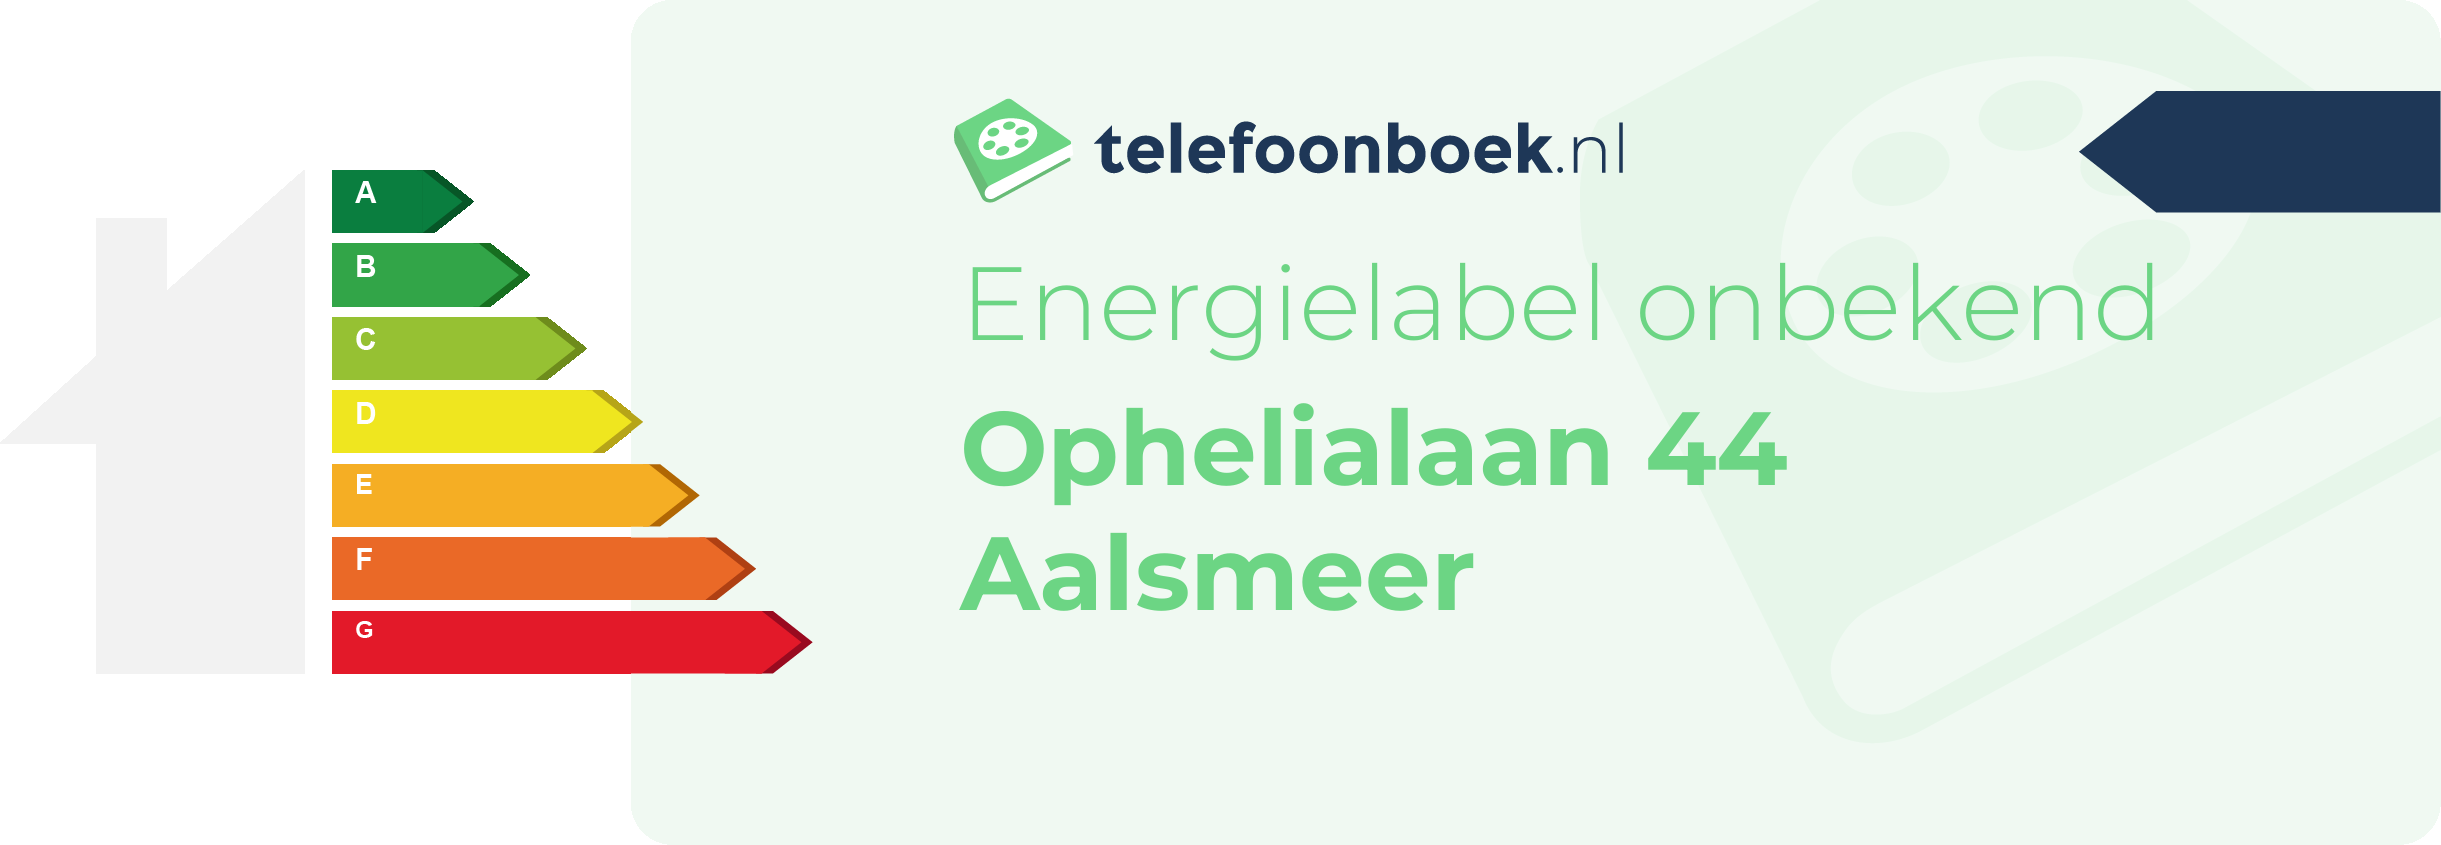 Energielabel Ophelialaan 44 Aalsmeer